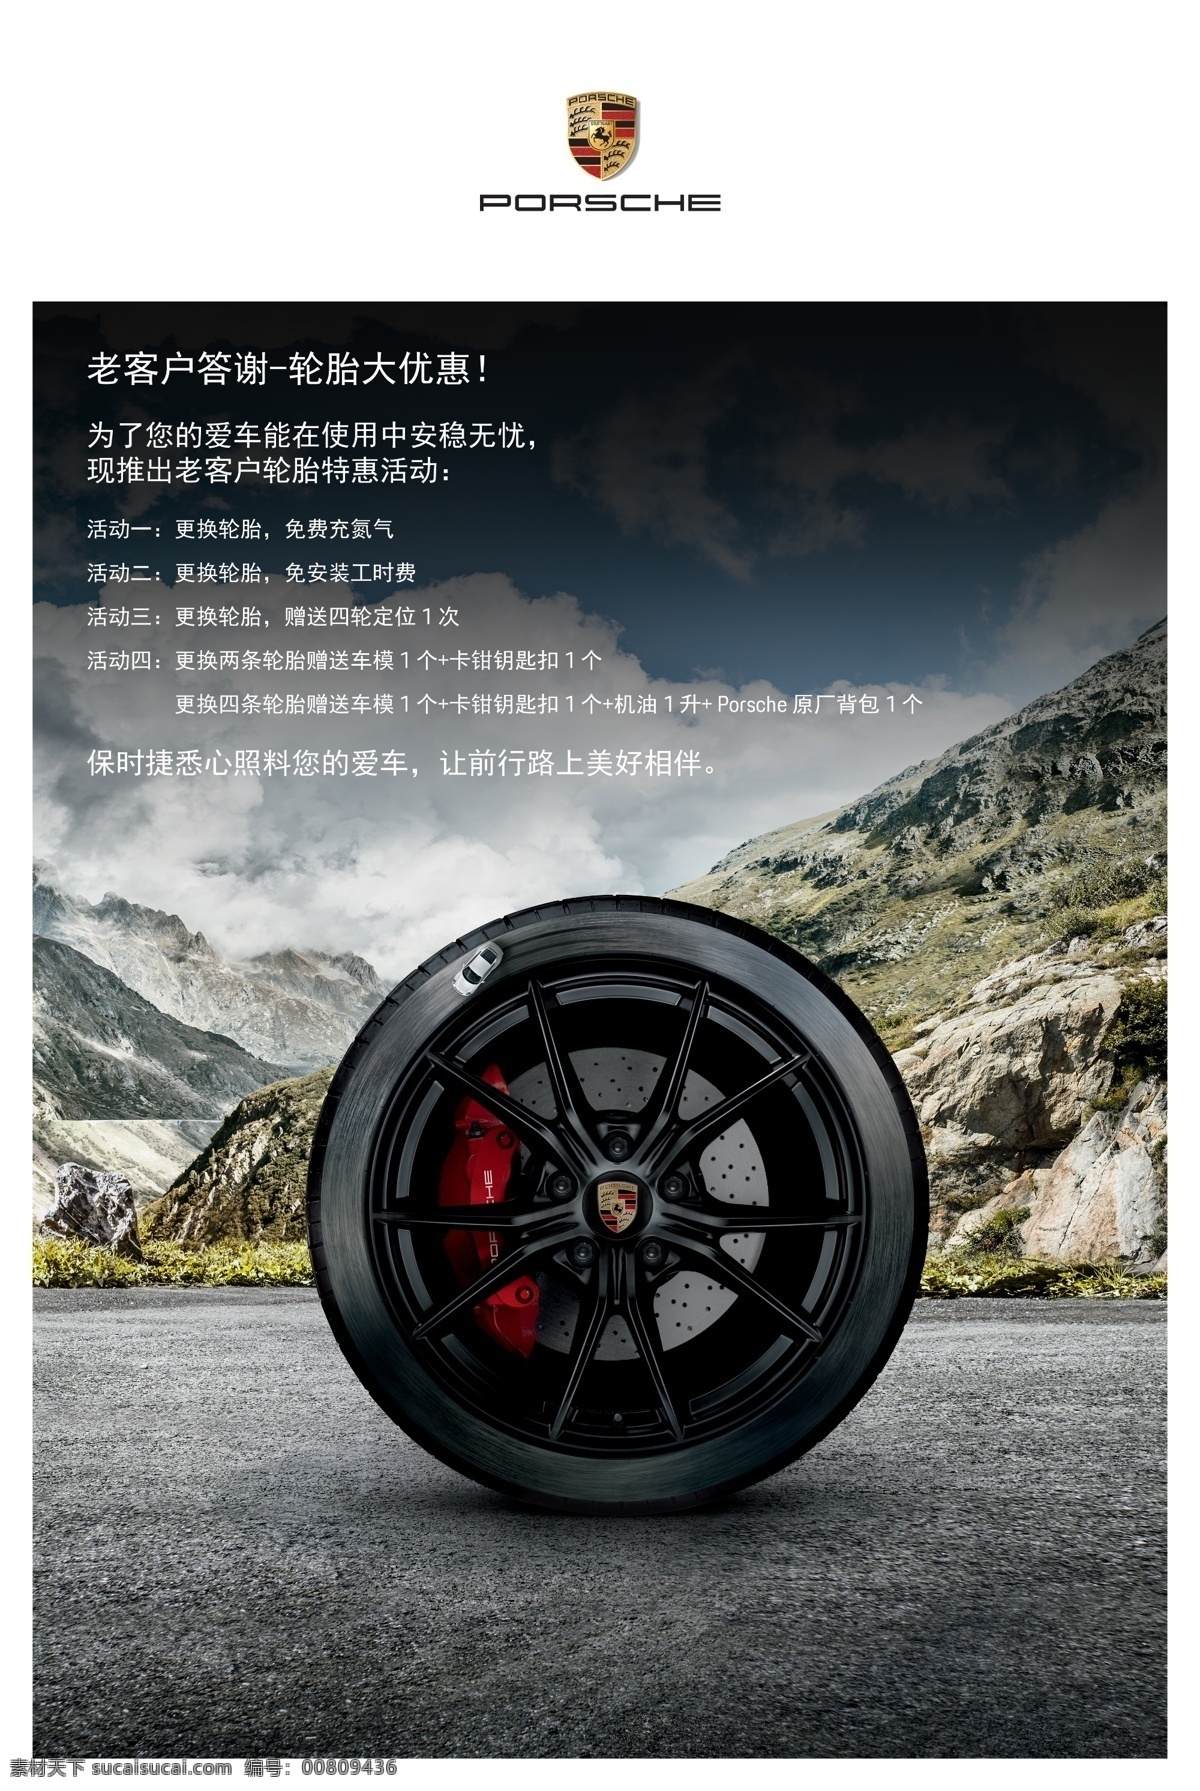 轮胎海报 轮胎 汽车 海报 竖版 保时捷 平面设计